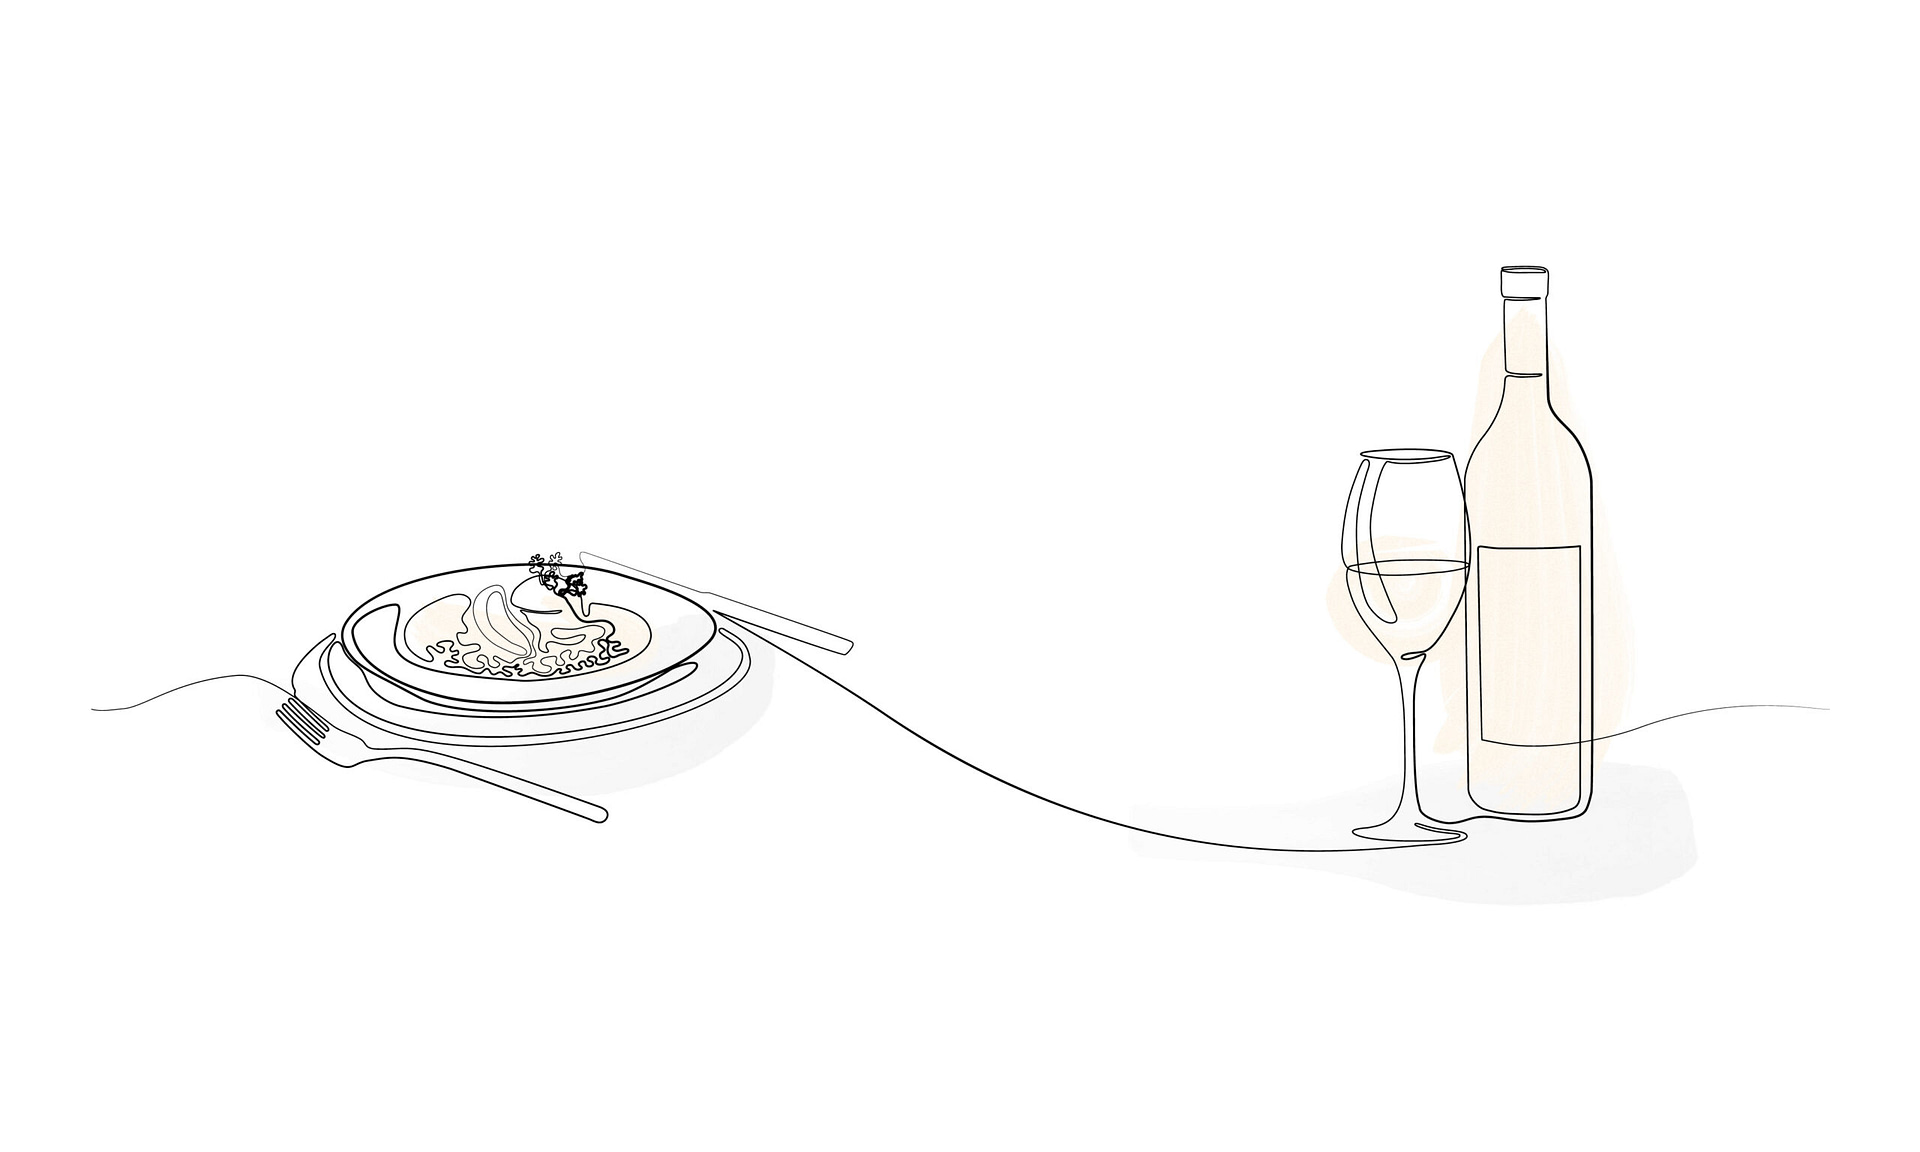 Illustration Gericht serviert mit Wein